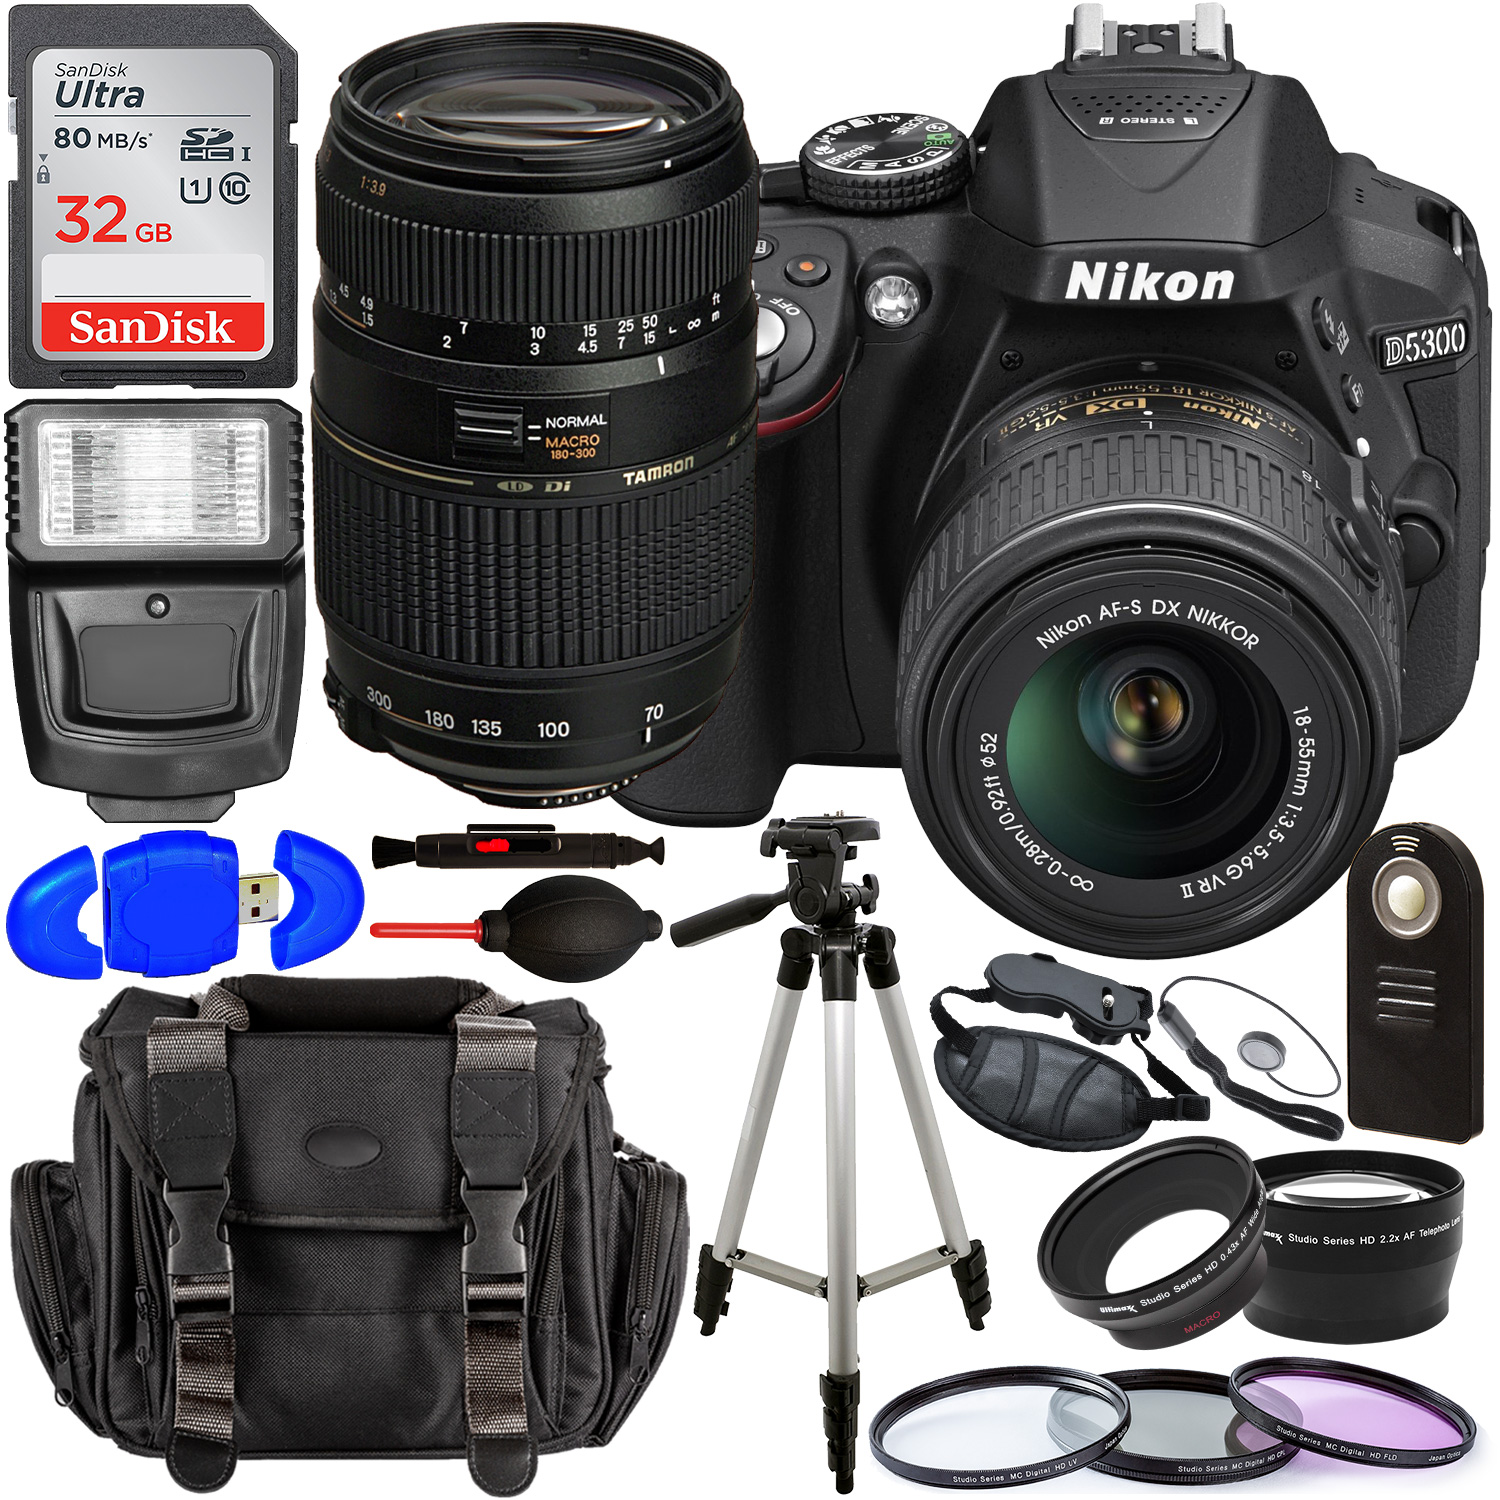 Nikon D5300 DSLR Camera with 18-55mm Lens (Black) â?? 1531 with Tamron 70-300mm Lens for Nikon AF - AF017NII-700 and Accessory Bundle